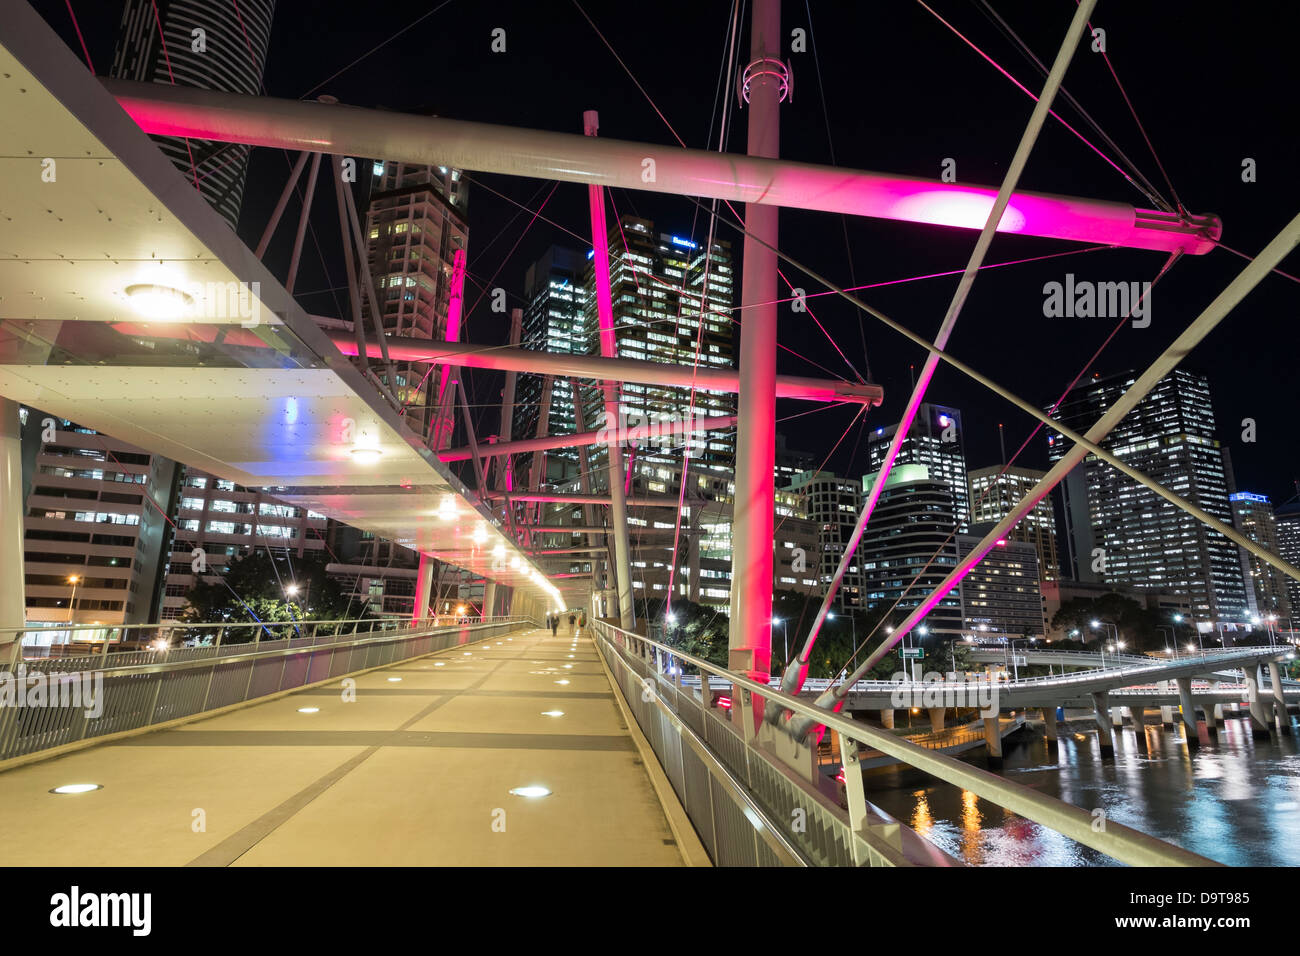 Kurilpa moderne pont qui est une passerelle traversant la rivière Brisbane à Brisbane Queensland Australie Banque D'Images